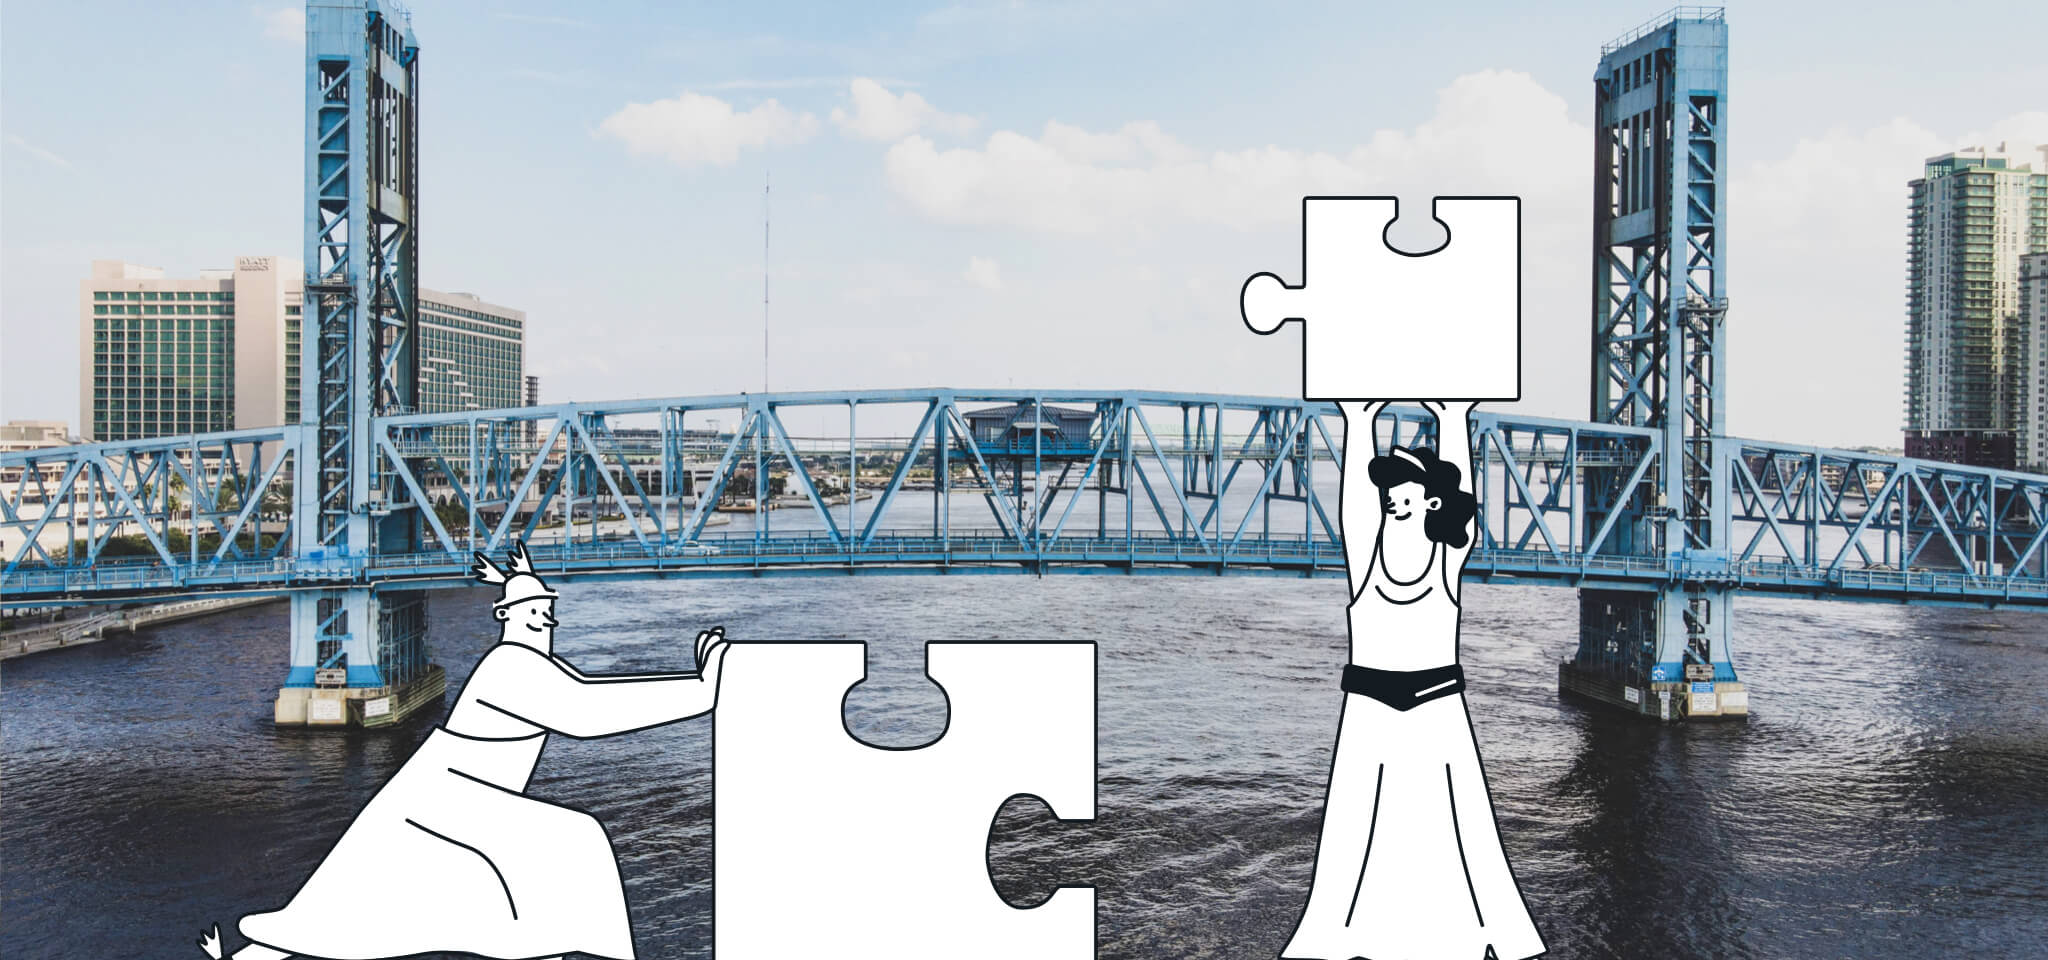 Hermes und eine Göttin versuchen, zwei Puzzlestücke vor einer Brücke zusammenzusetzen